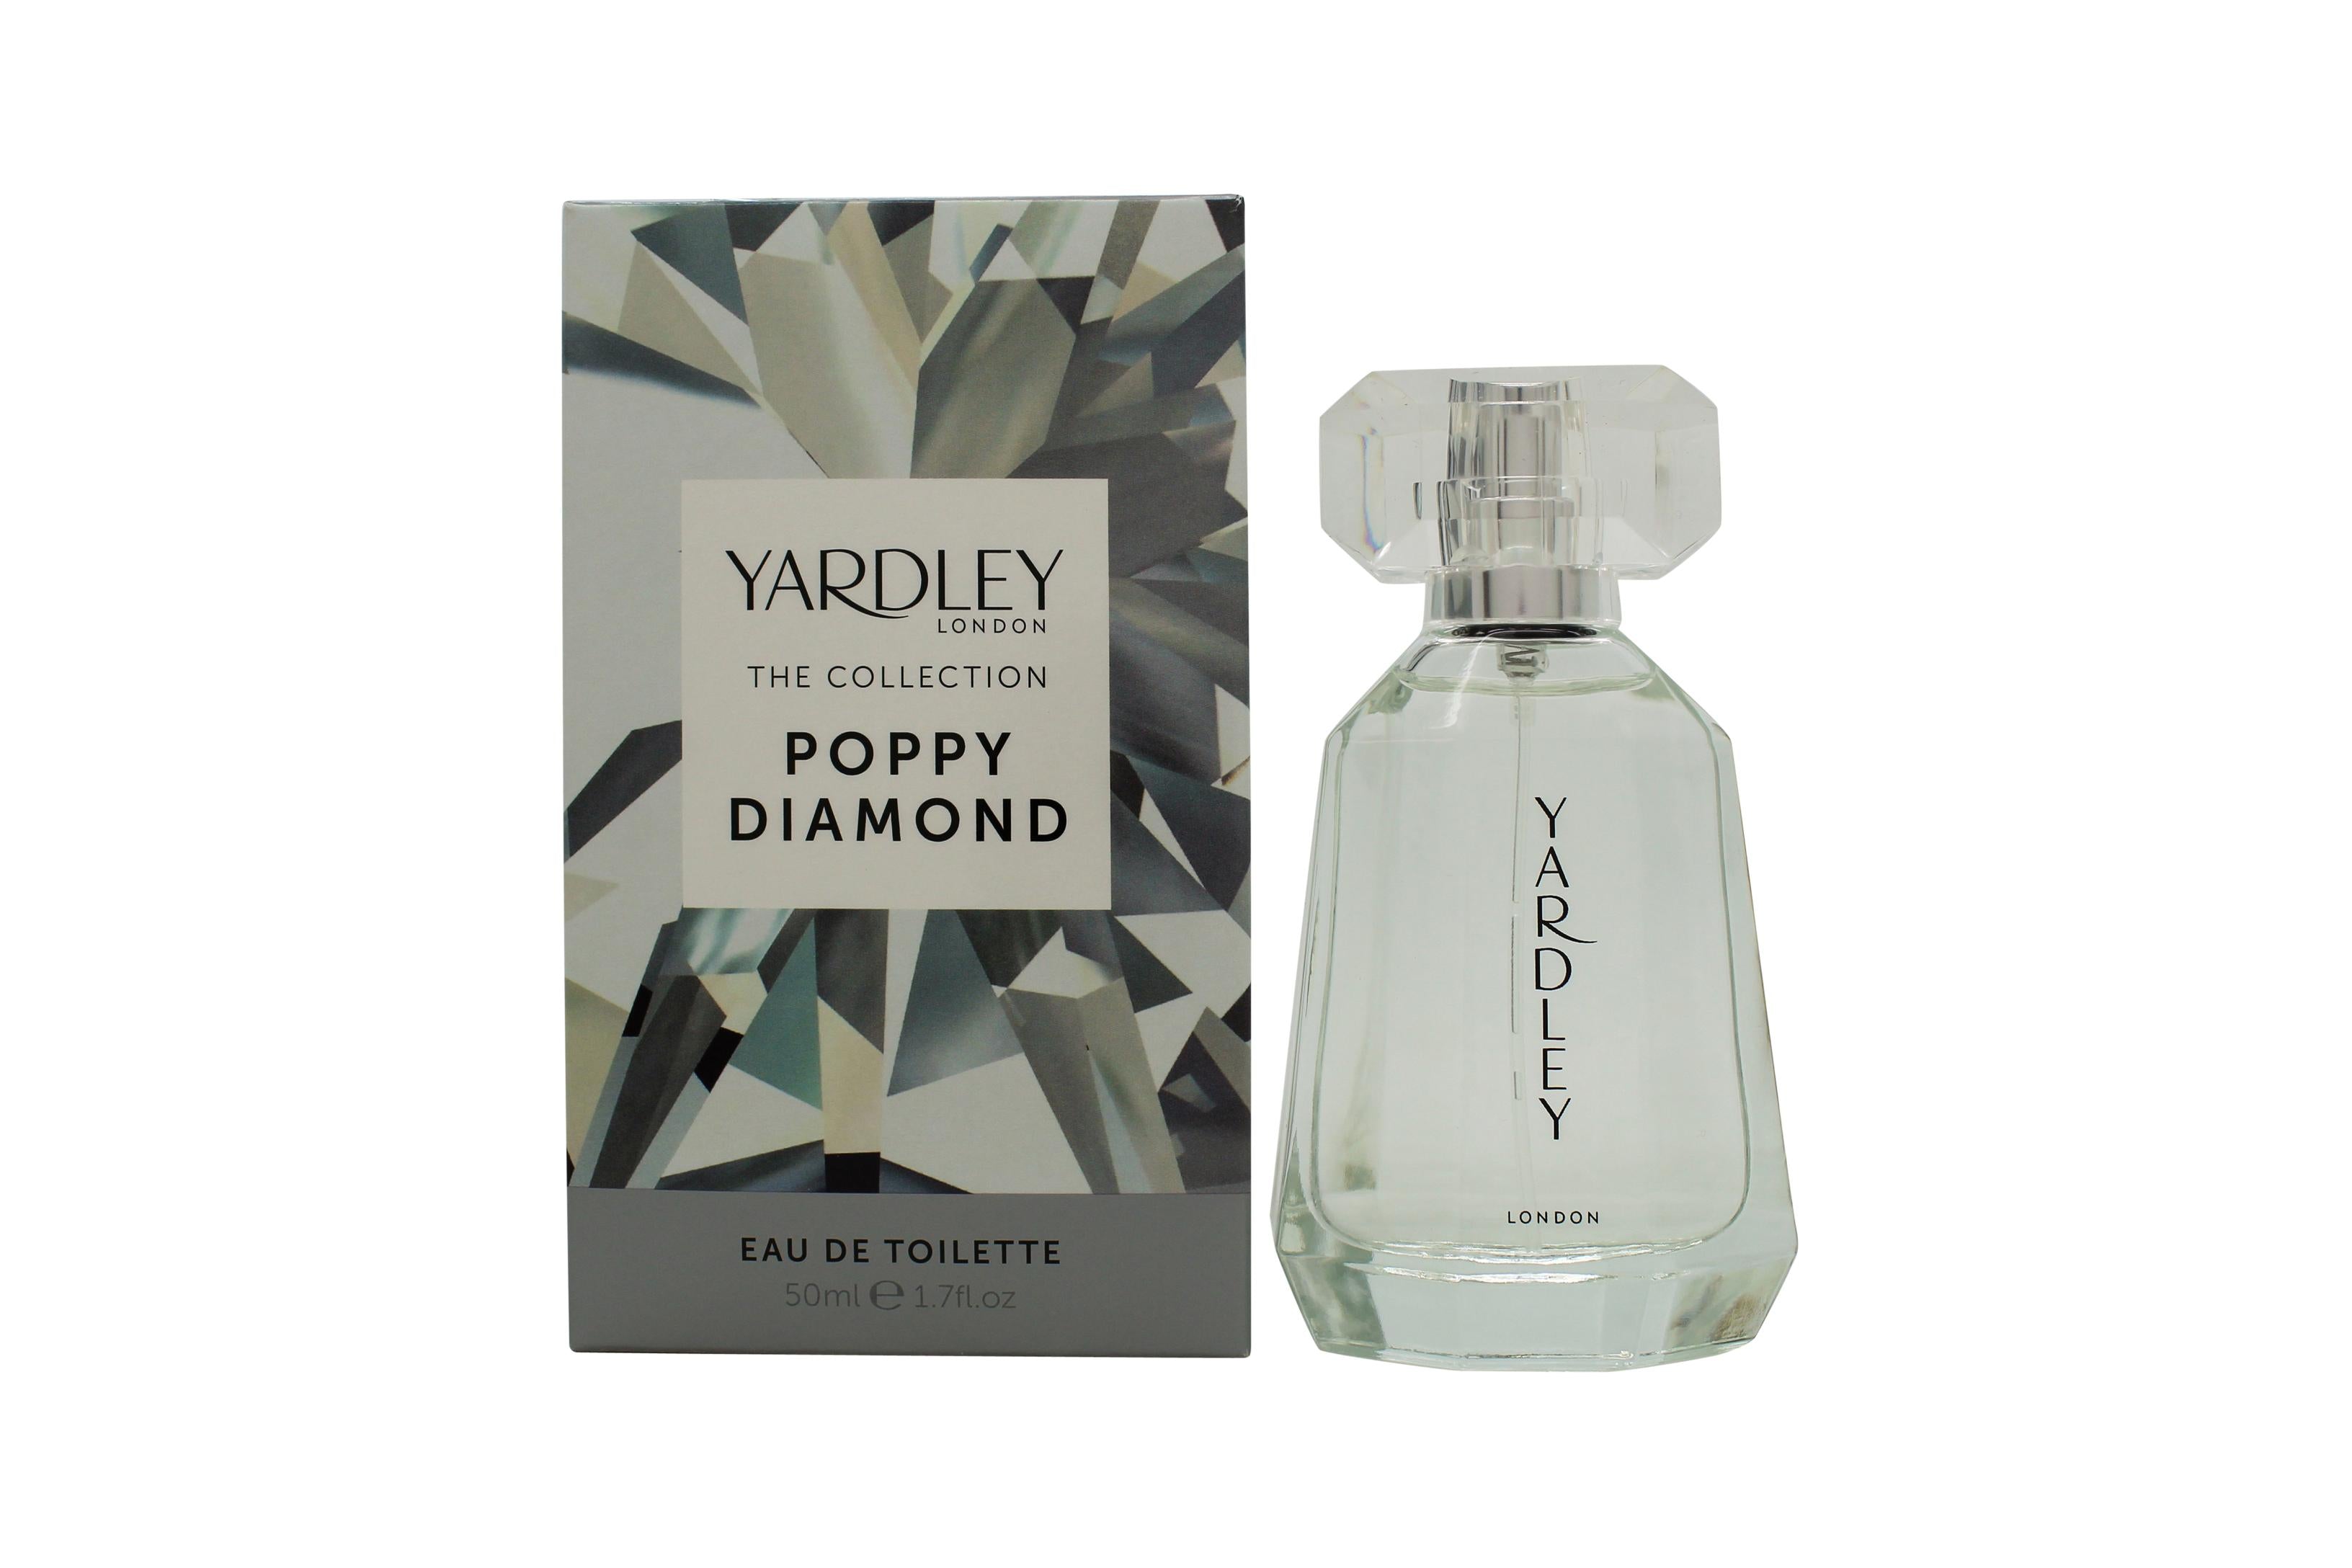 YARDLEY Poppy Diamond EDT 50ml - Peacock Bazaar